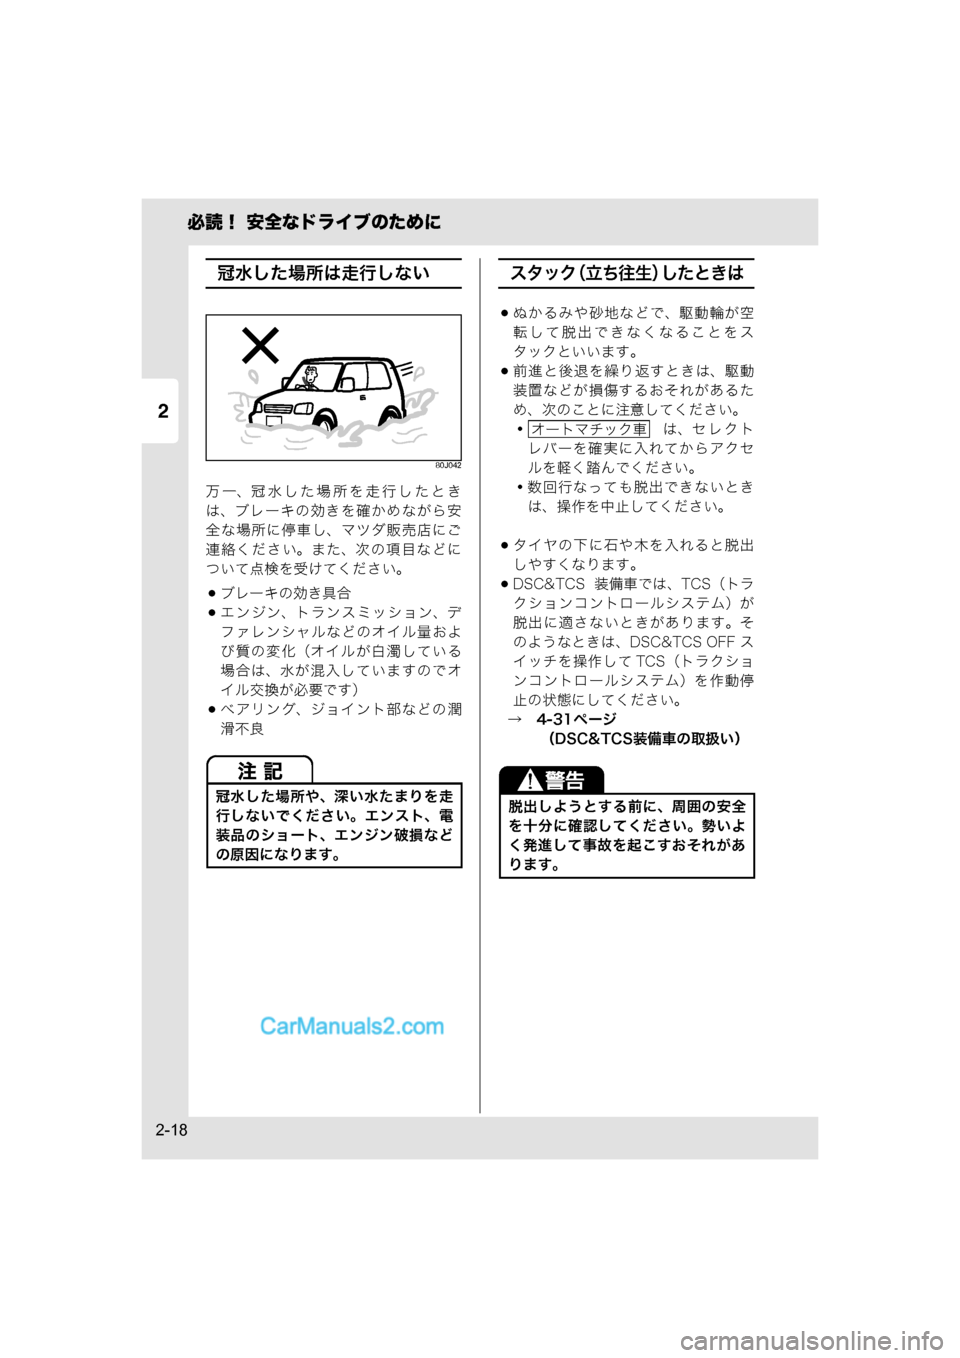 MAZDA MODEL CARROL 2015  取扱説明書 (キャロル) (in Japanese) 2
必読！ 安全なドライブのために
2-18
冠水した場所は走行しない
80J042
万一、冠水した場所を走行したとき
は、ブレーキの効きを確かめながら安
全�